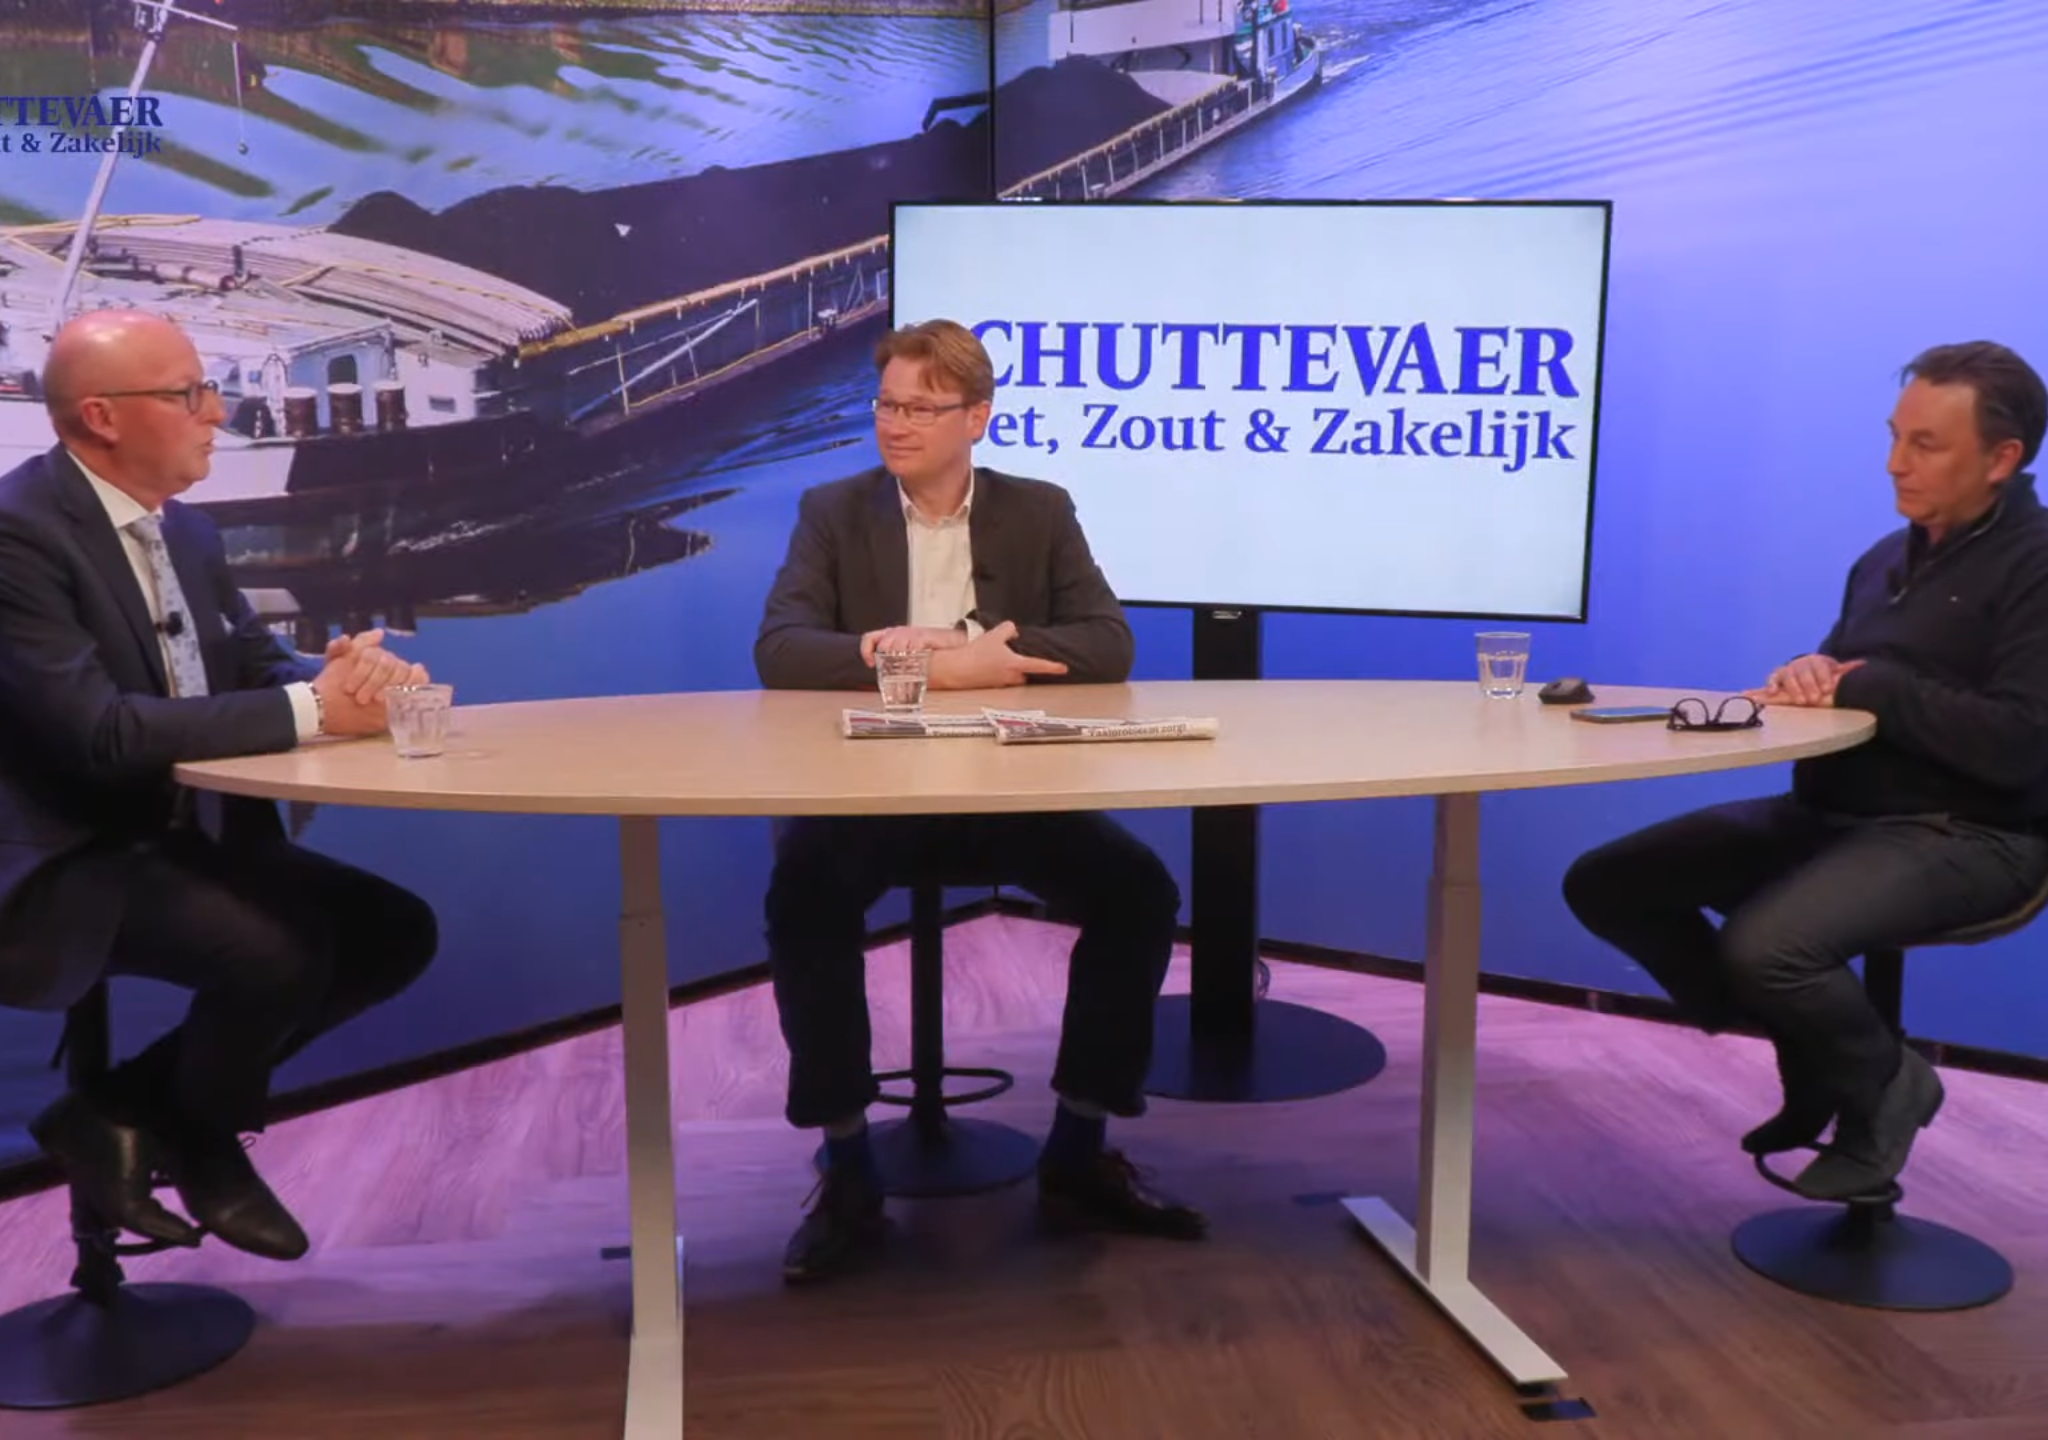 Andreas Keller (NNVO), Maurits van der Linde (BLN-Schuttevaer) en René Quist in de uitzending van Studio Schuttevaer. (Beeld uit video)